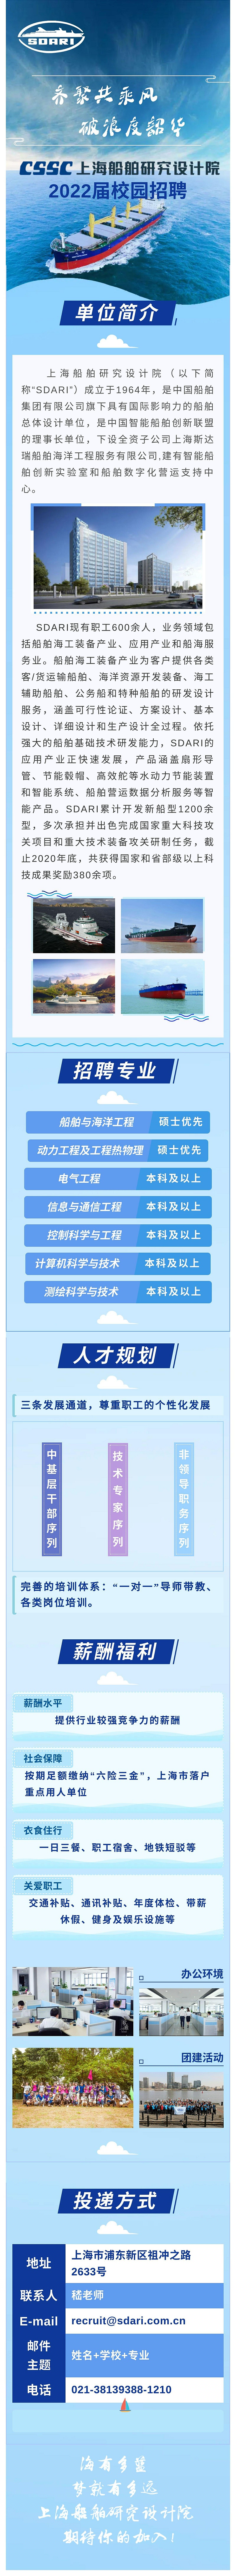 上海船舶研究设计院招聘简章（2022届）.jpg